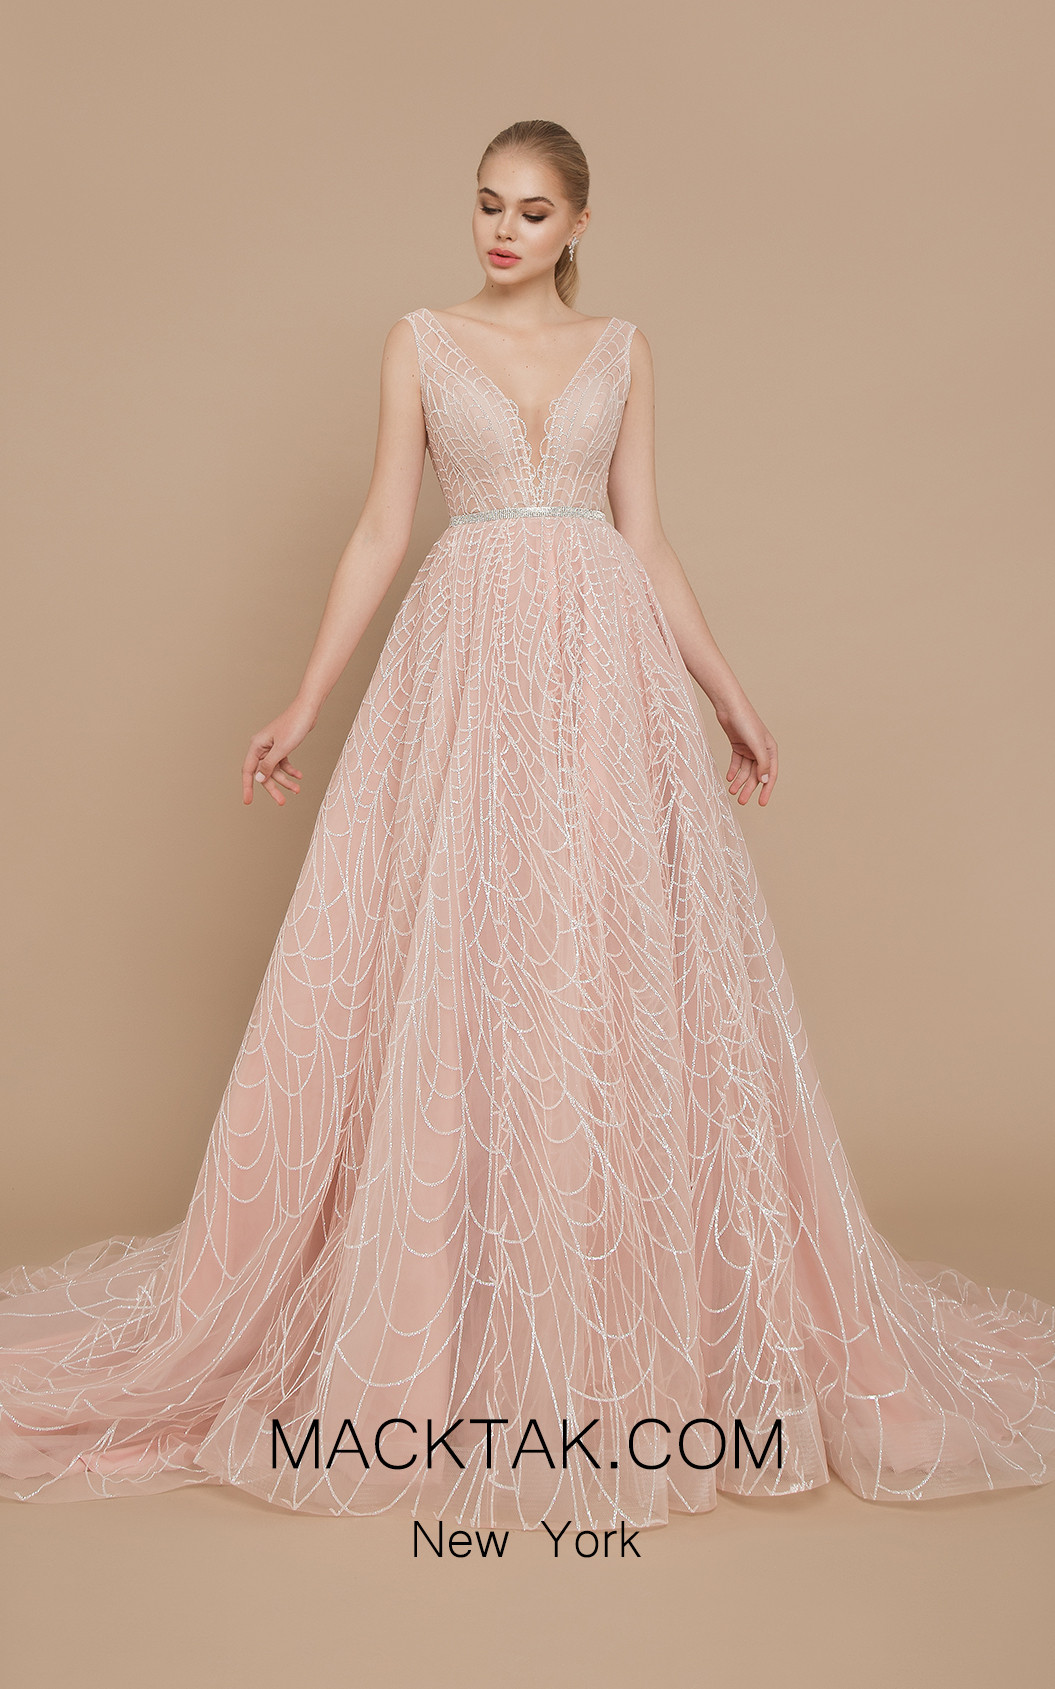 Ricca Sposa Celine Pink Front Dress